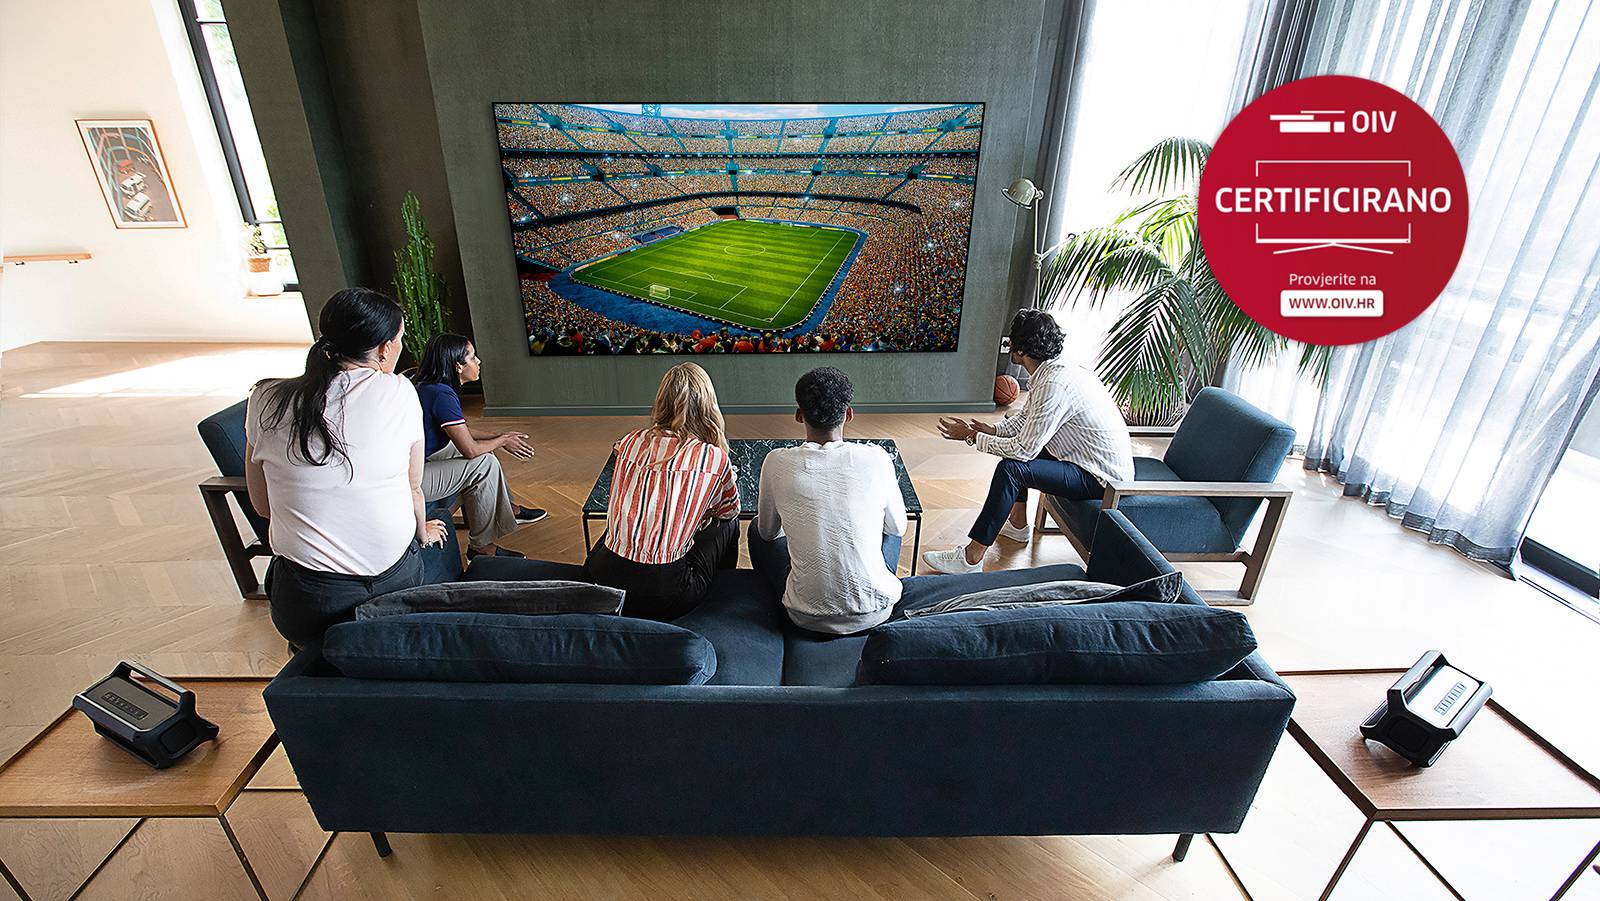 LG-evi pametni televizori podržavaju DVB-T2 signal i zato su odličan izbor